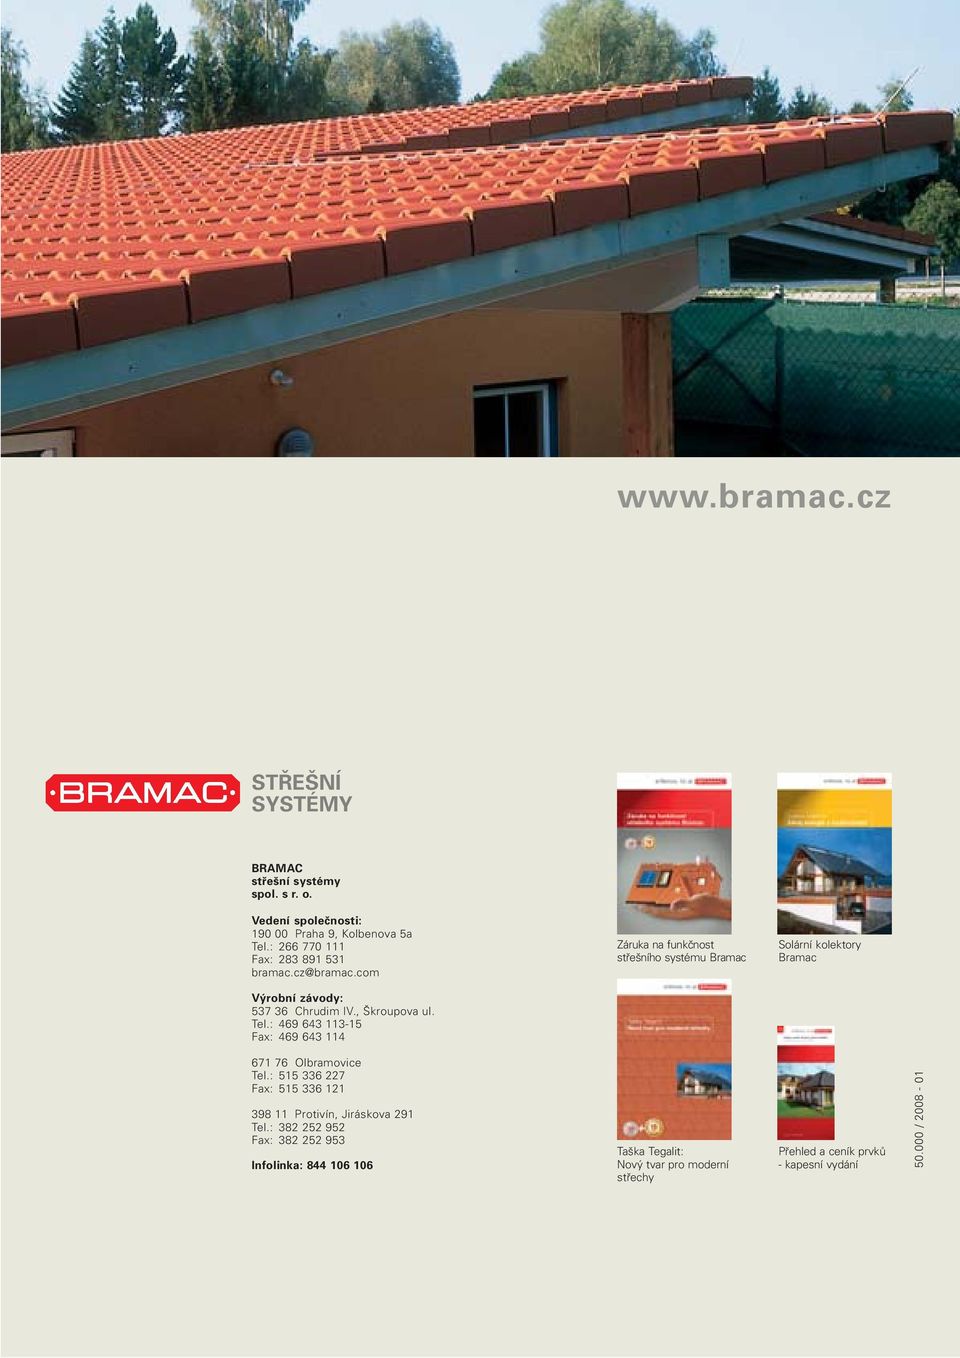 com Záruka na funkčnost střešního systému Bramac Solární kolektory Bramac Výrobní závody: 537 36 Chrudim IV., Škroupova ul. Tel.